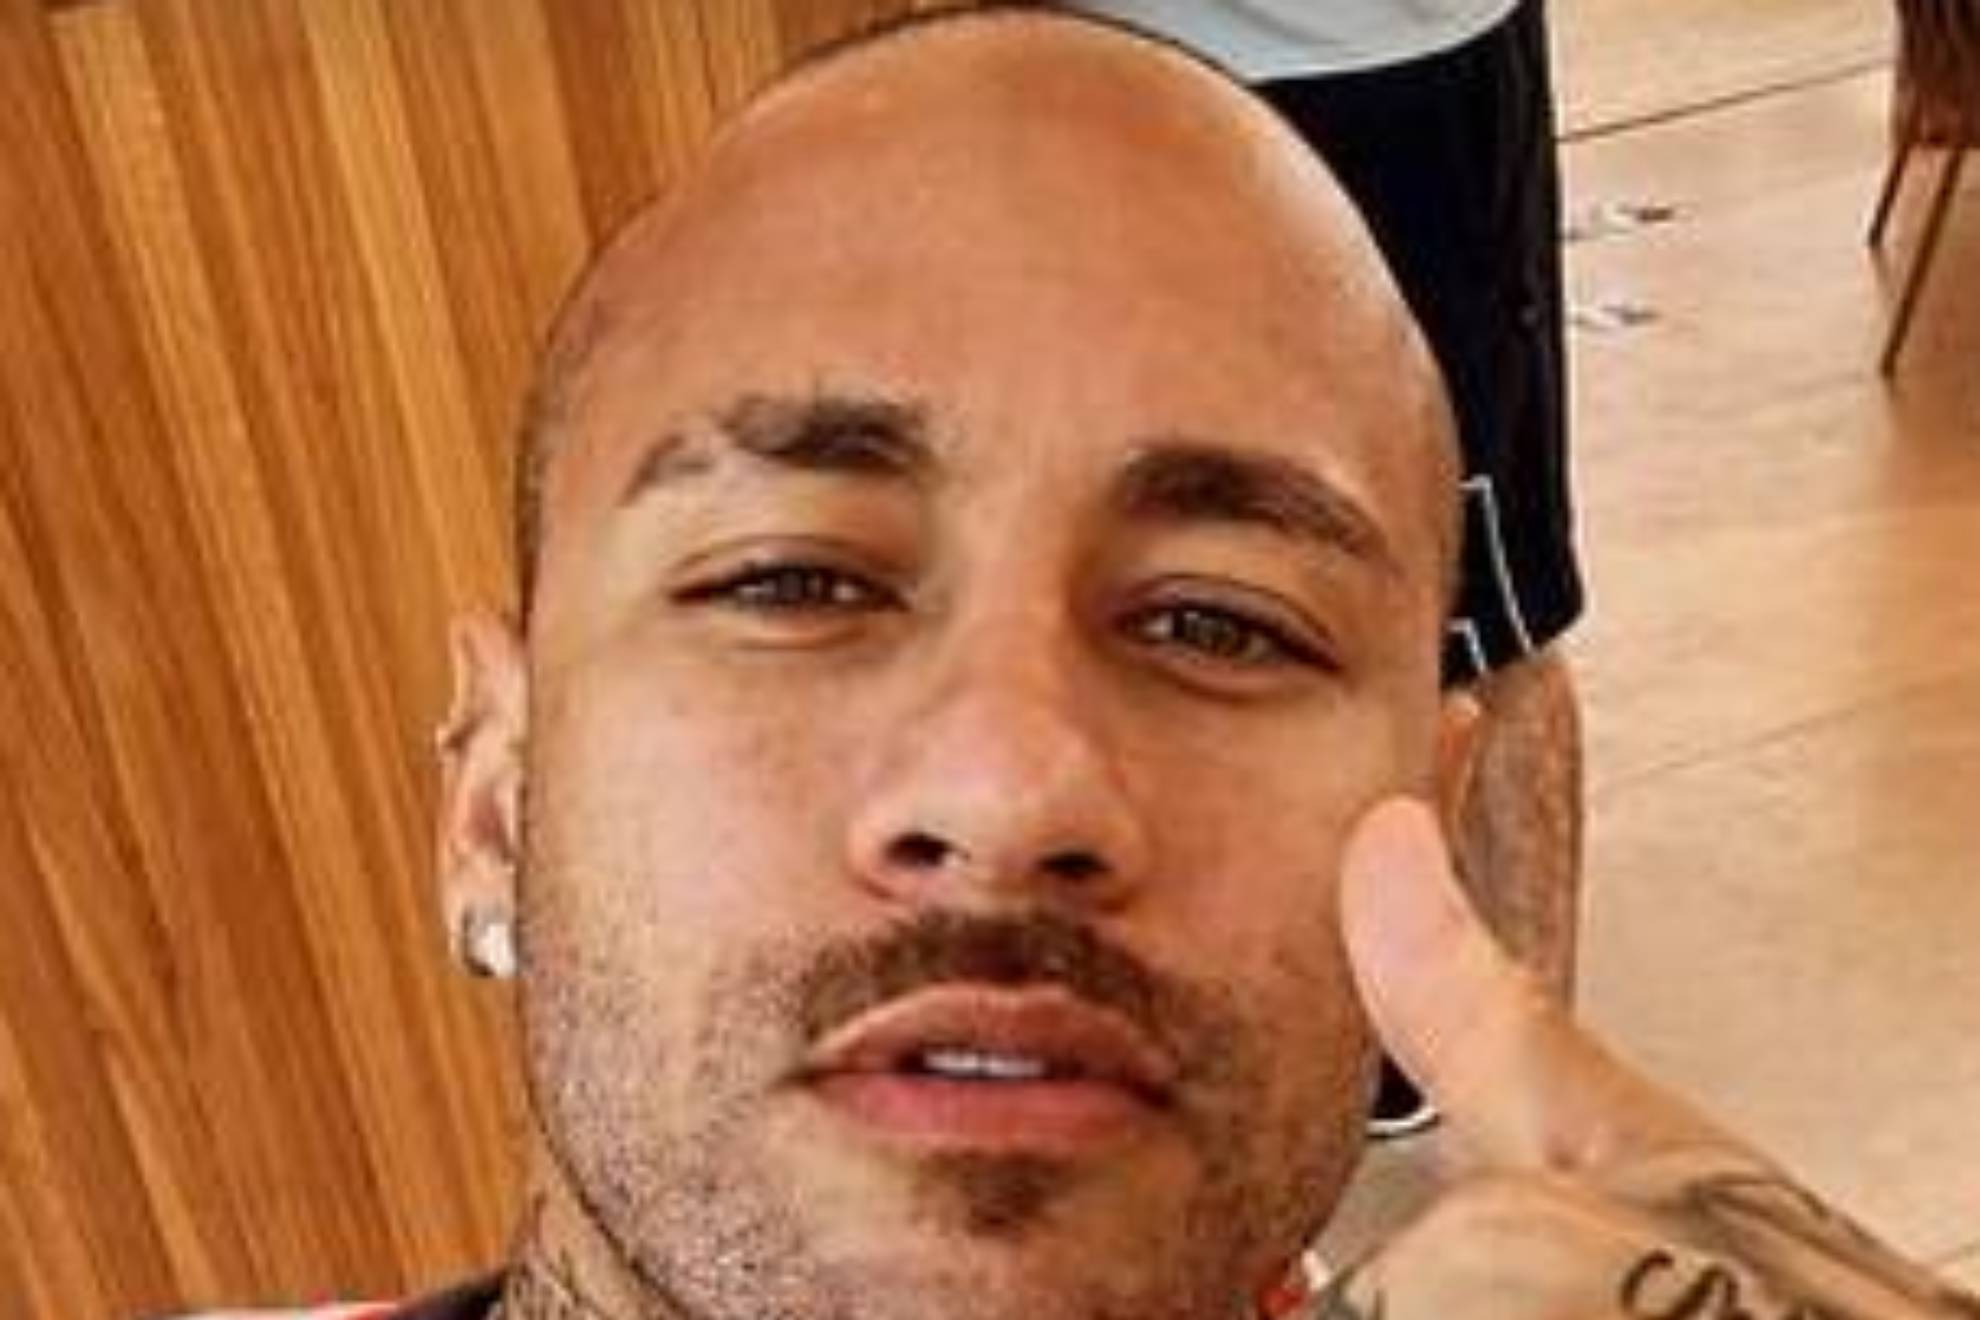 El nuevo look de Neymar con la cabeza rapada